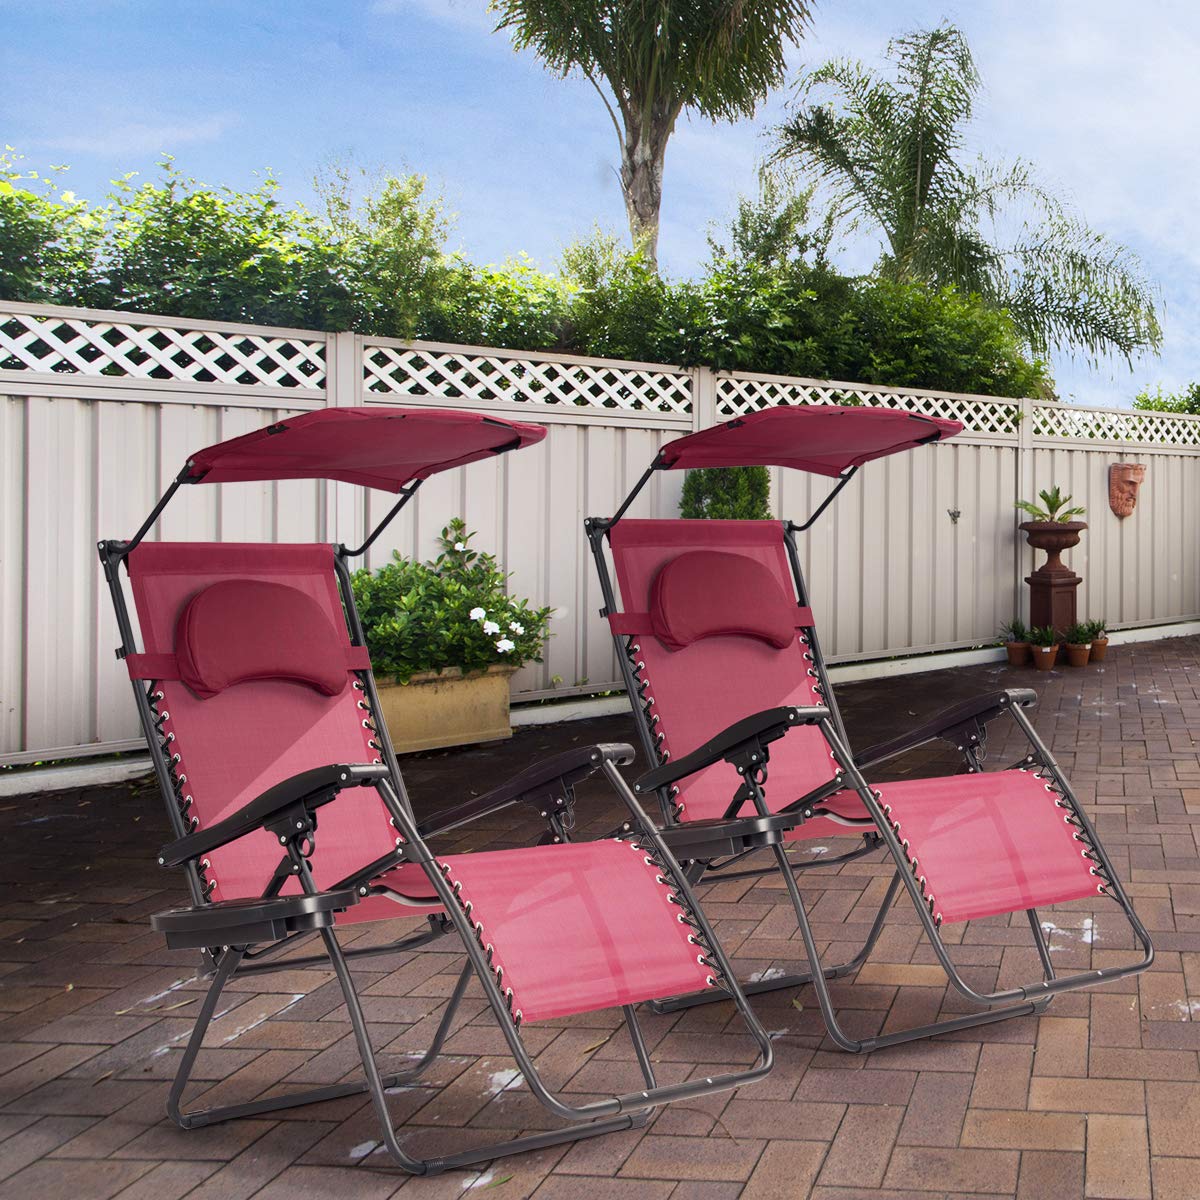 Chaise Goplus Zero Gravity, chaise de jardin pliante X-Large avec abat-jour et porte-gobelet, fauteuil inclinable de terrasse pliable réglable pour terrasse de porche de piscine surdimensionnée (vin)